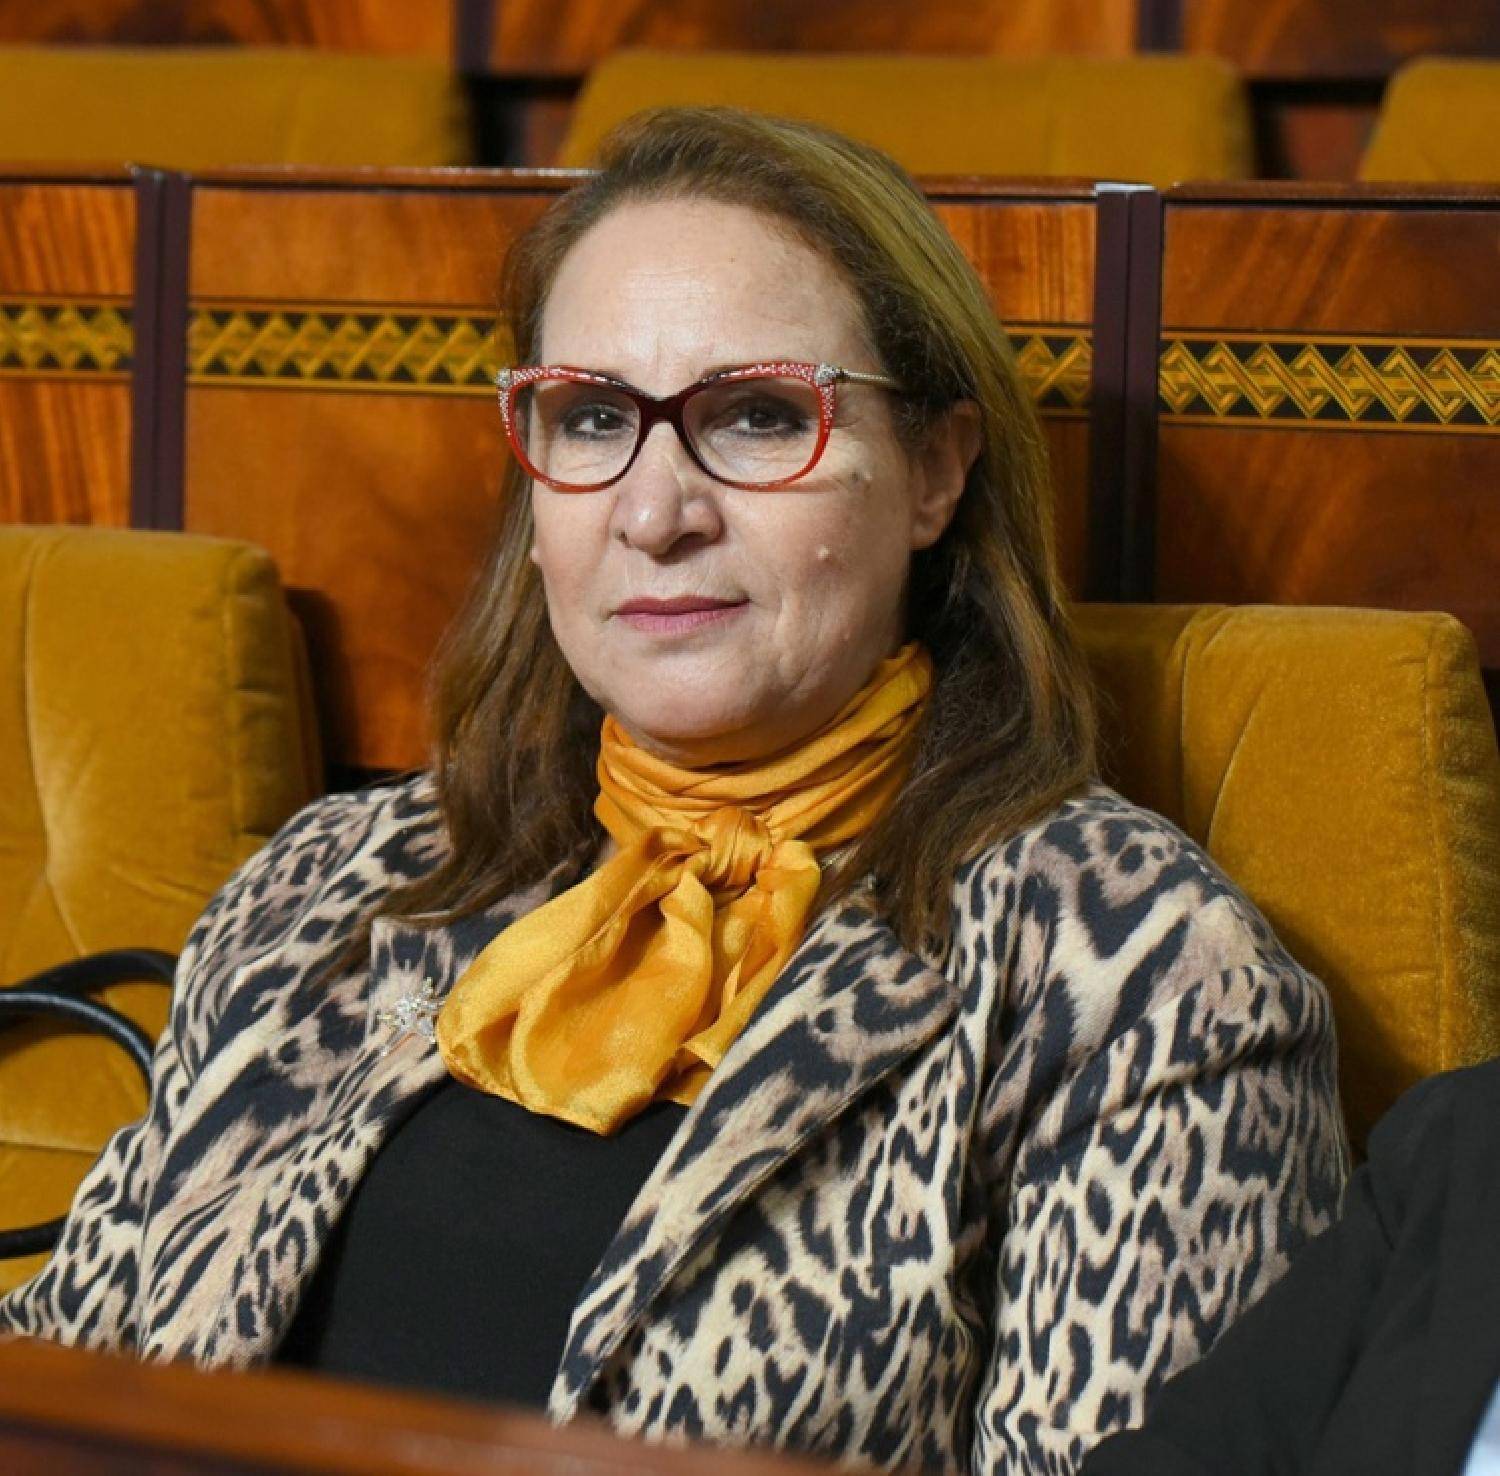 البرلمانية سعيدة: مسؤول بقطاع الصحة بمراكش طلب مني نشري ثلج لزوج الموتى من عائلتي